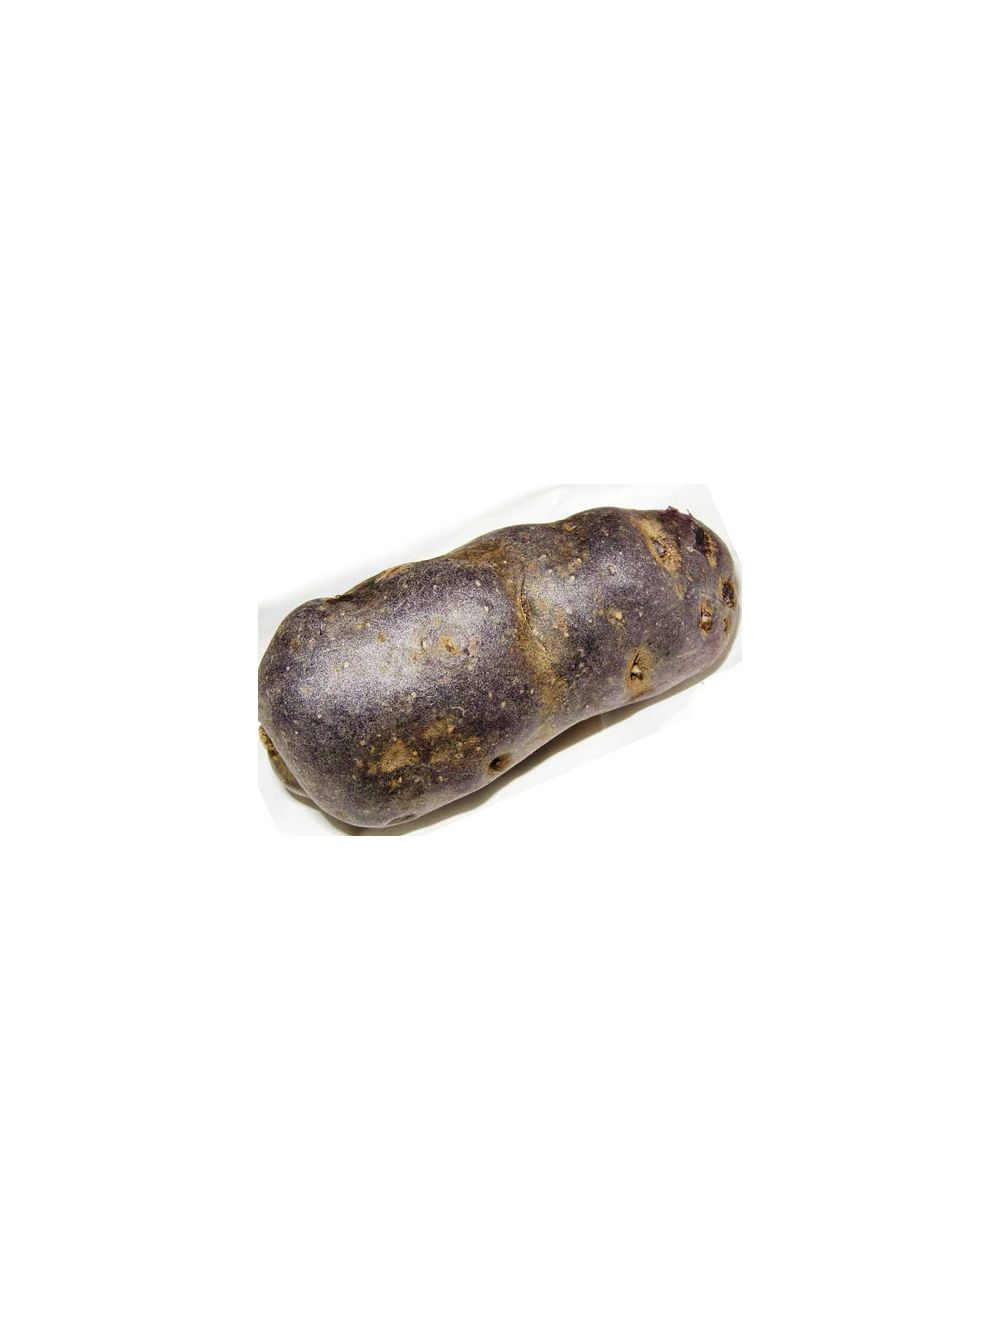 patata da seme bergerac